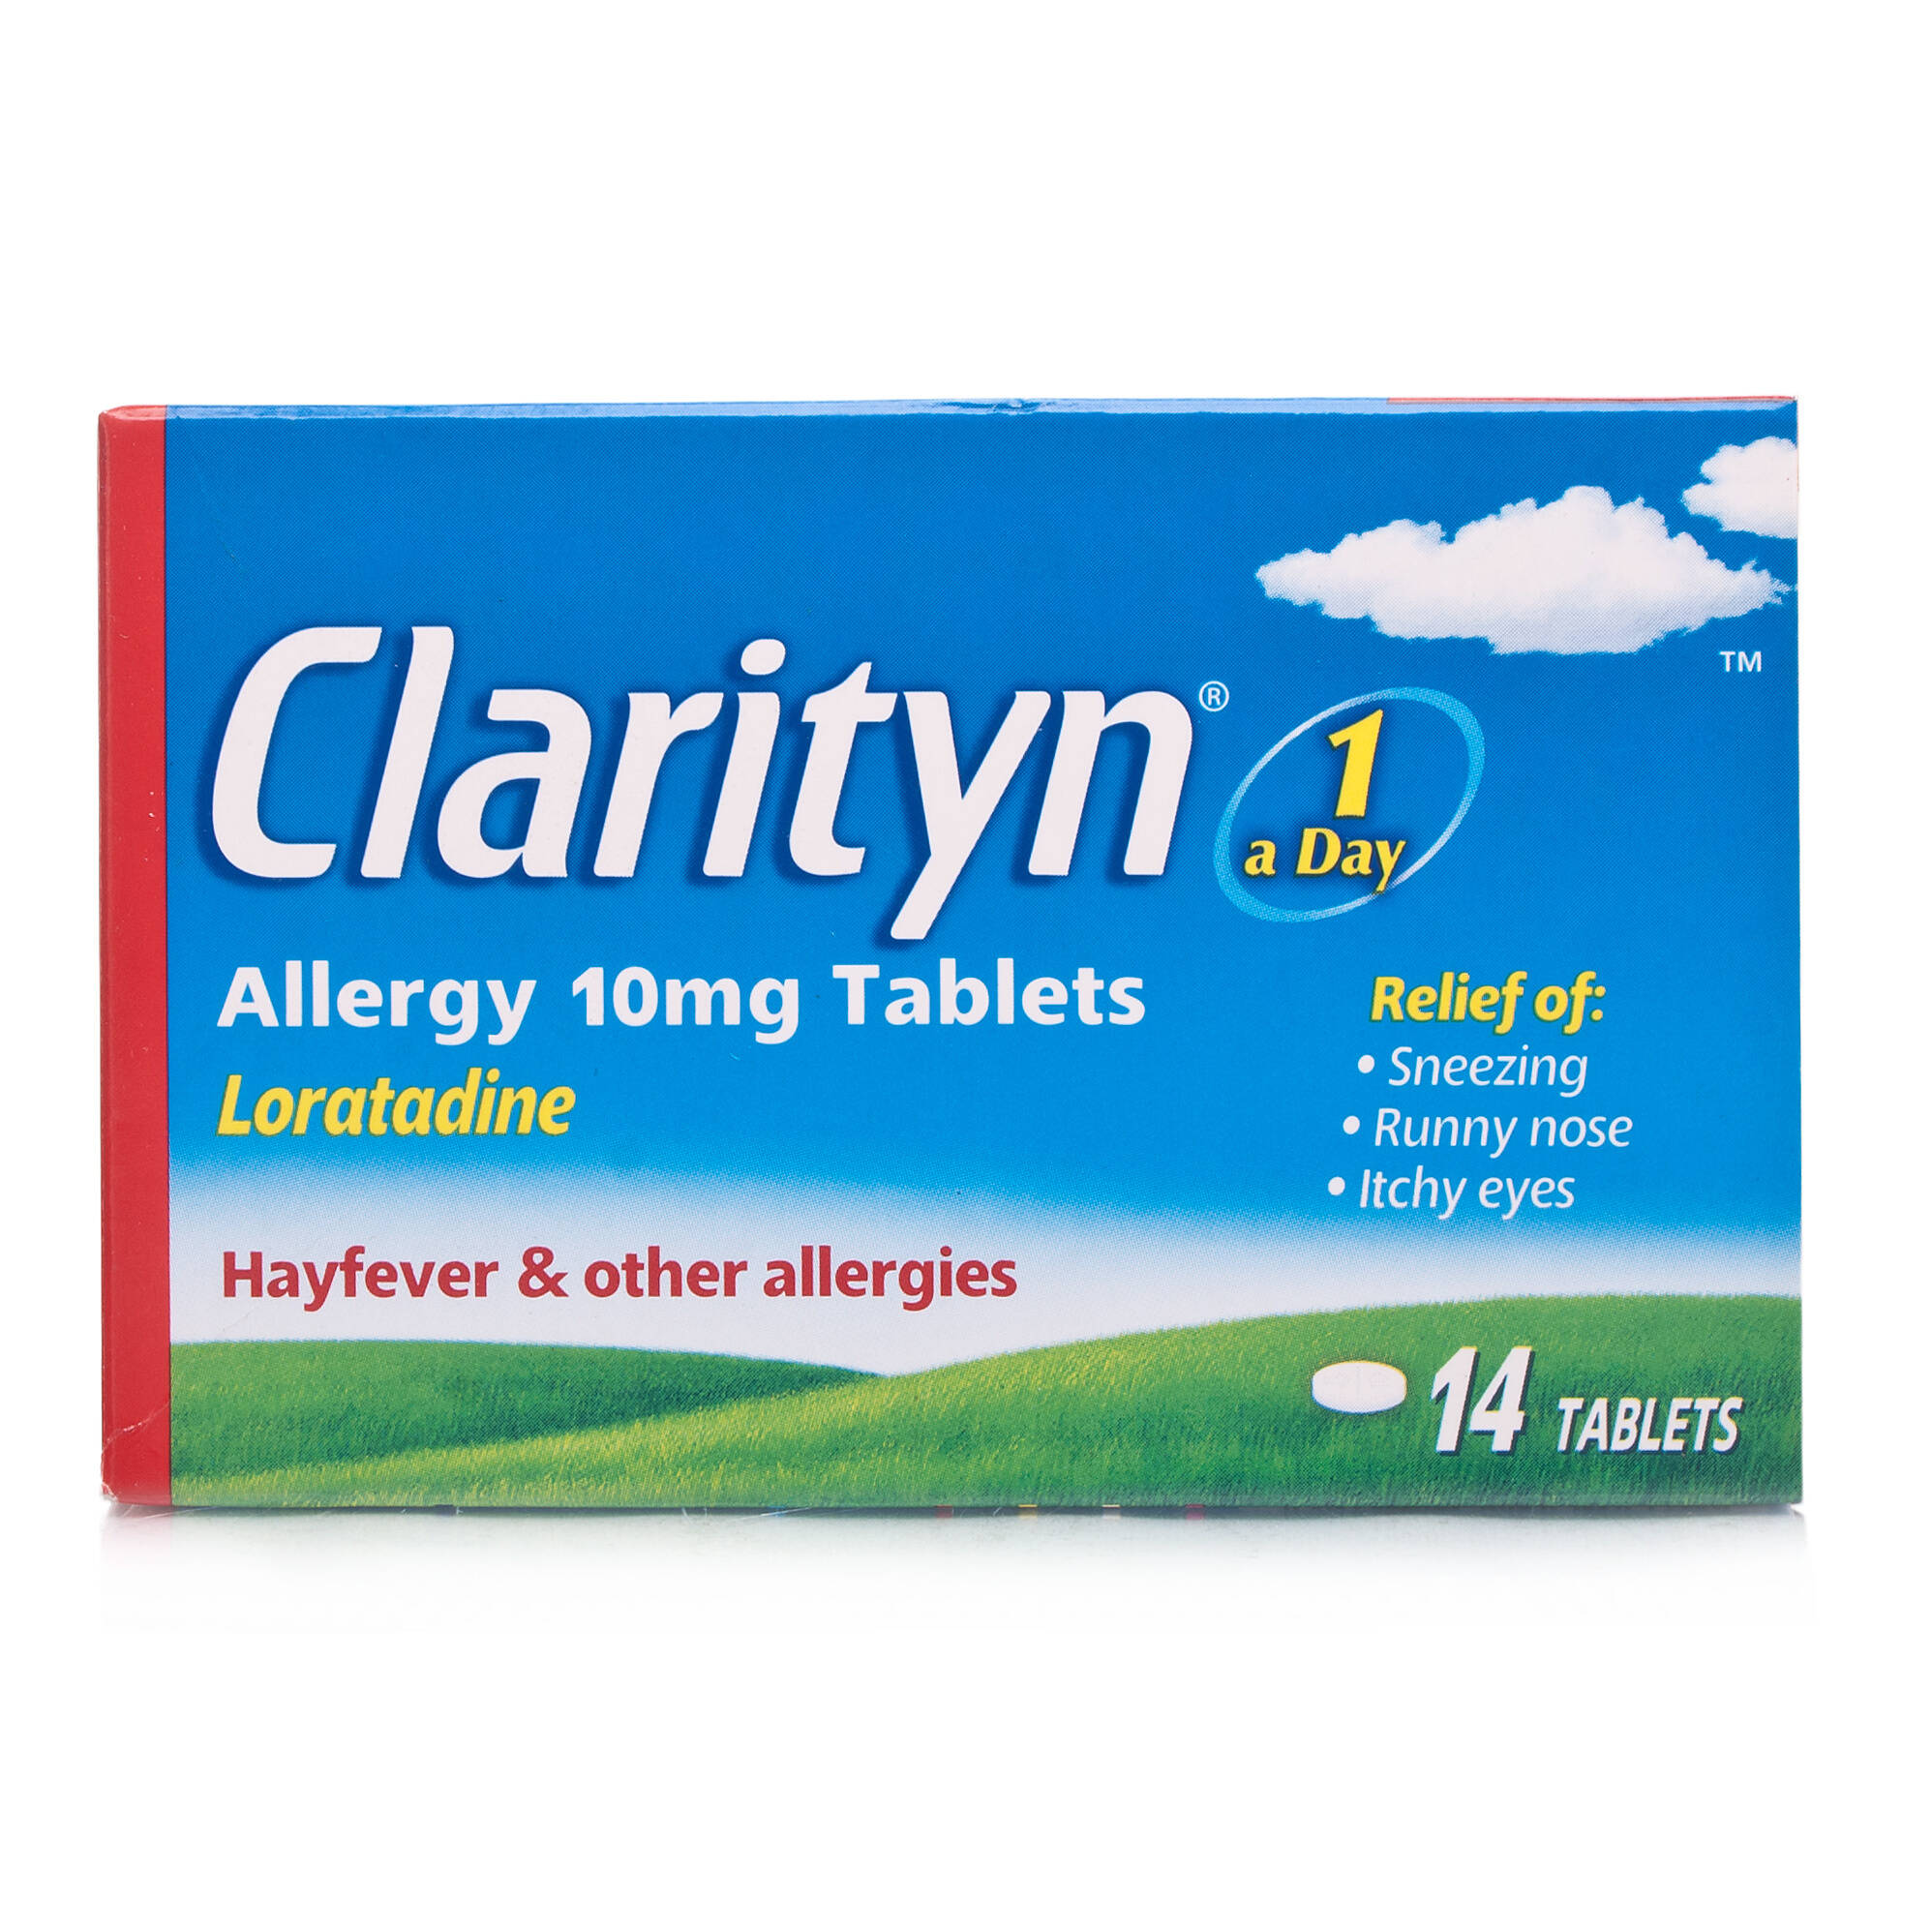 Clarityn Allergy Tablets